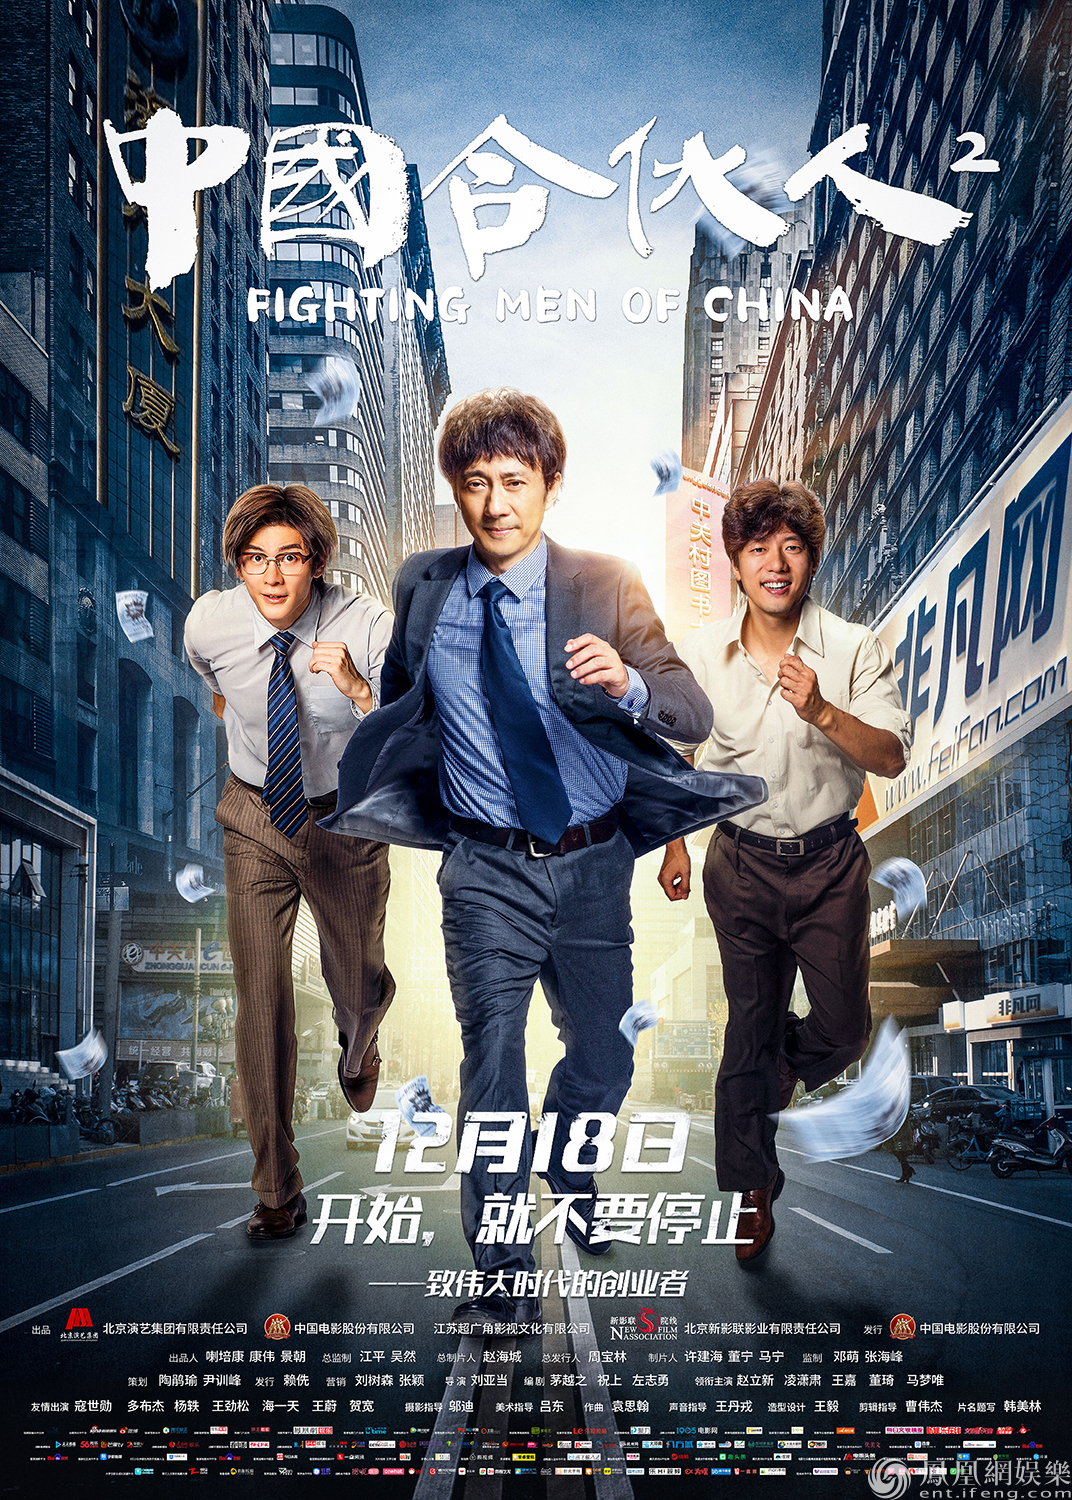 《中国合伙人2》发布勇往直前版海报 见证创业